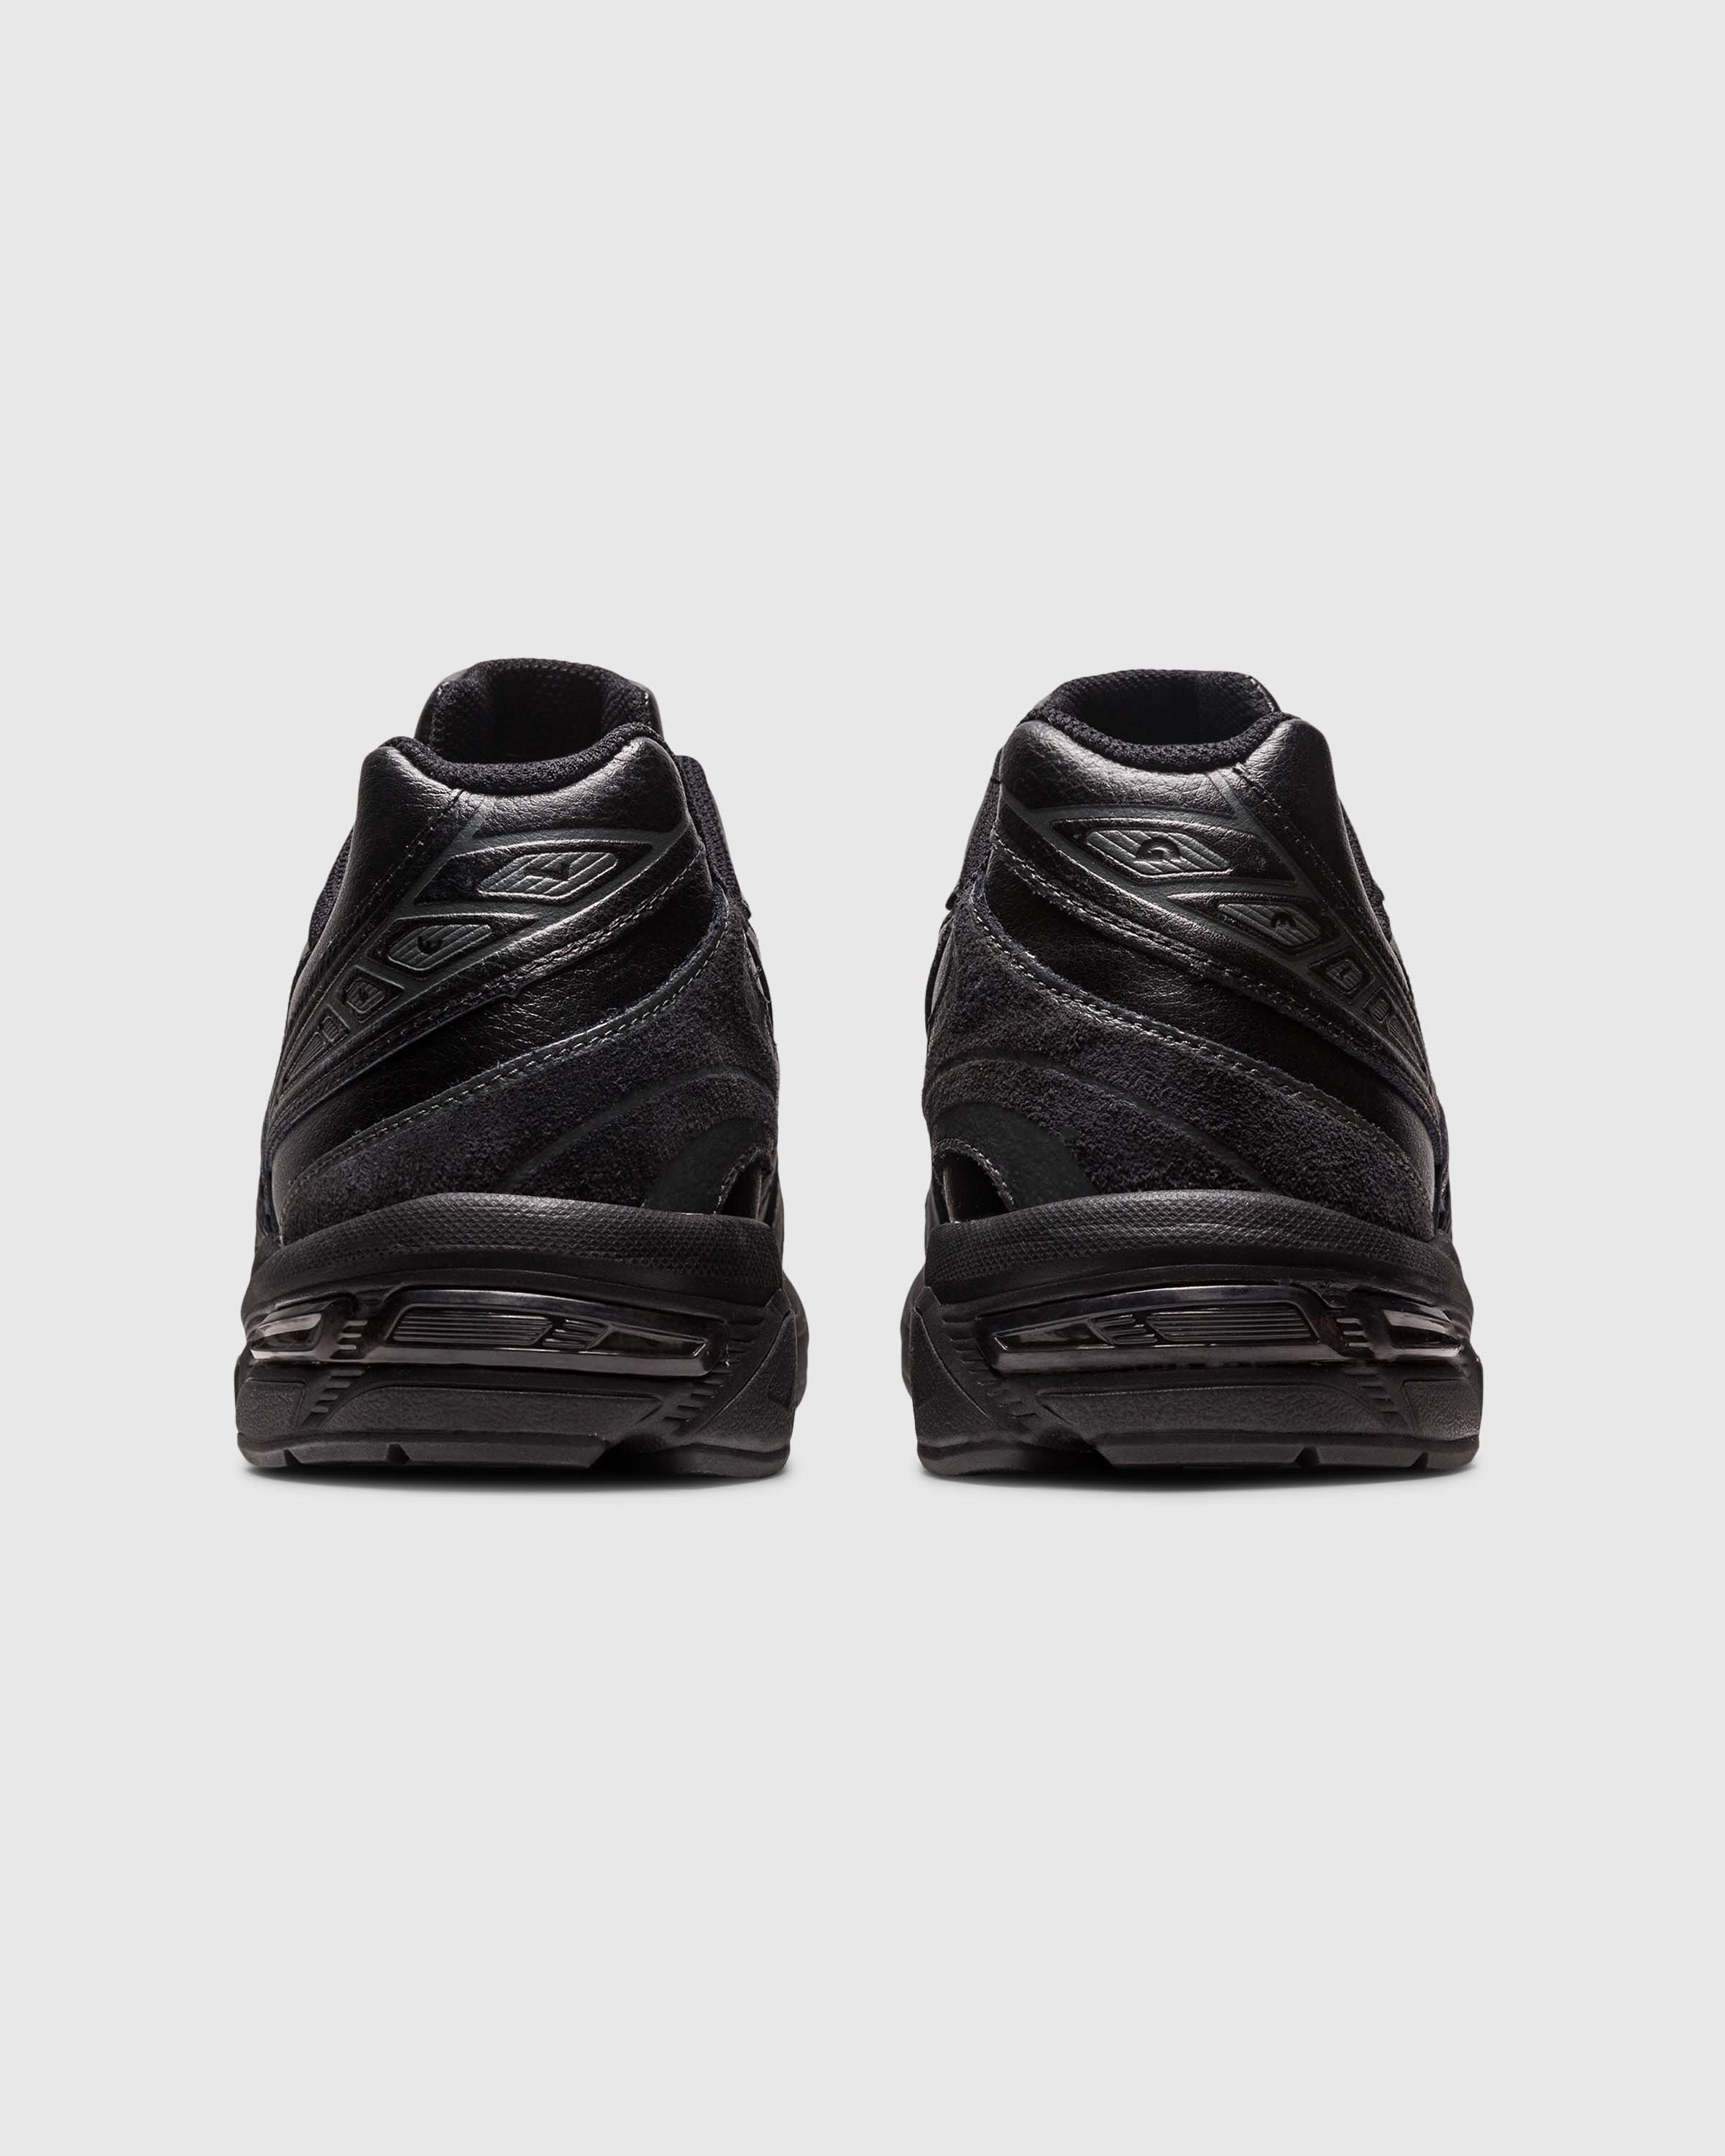 asics - GEL-1130 Black - Footwear - Black - Image 4